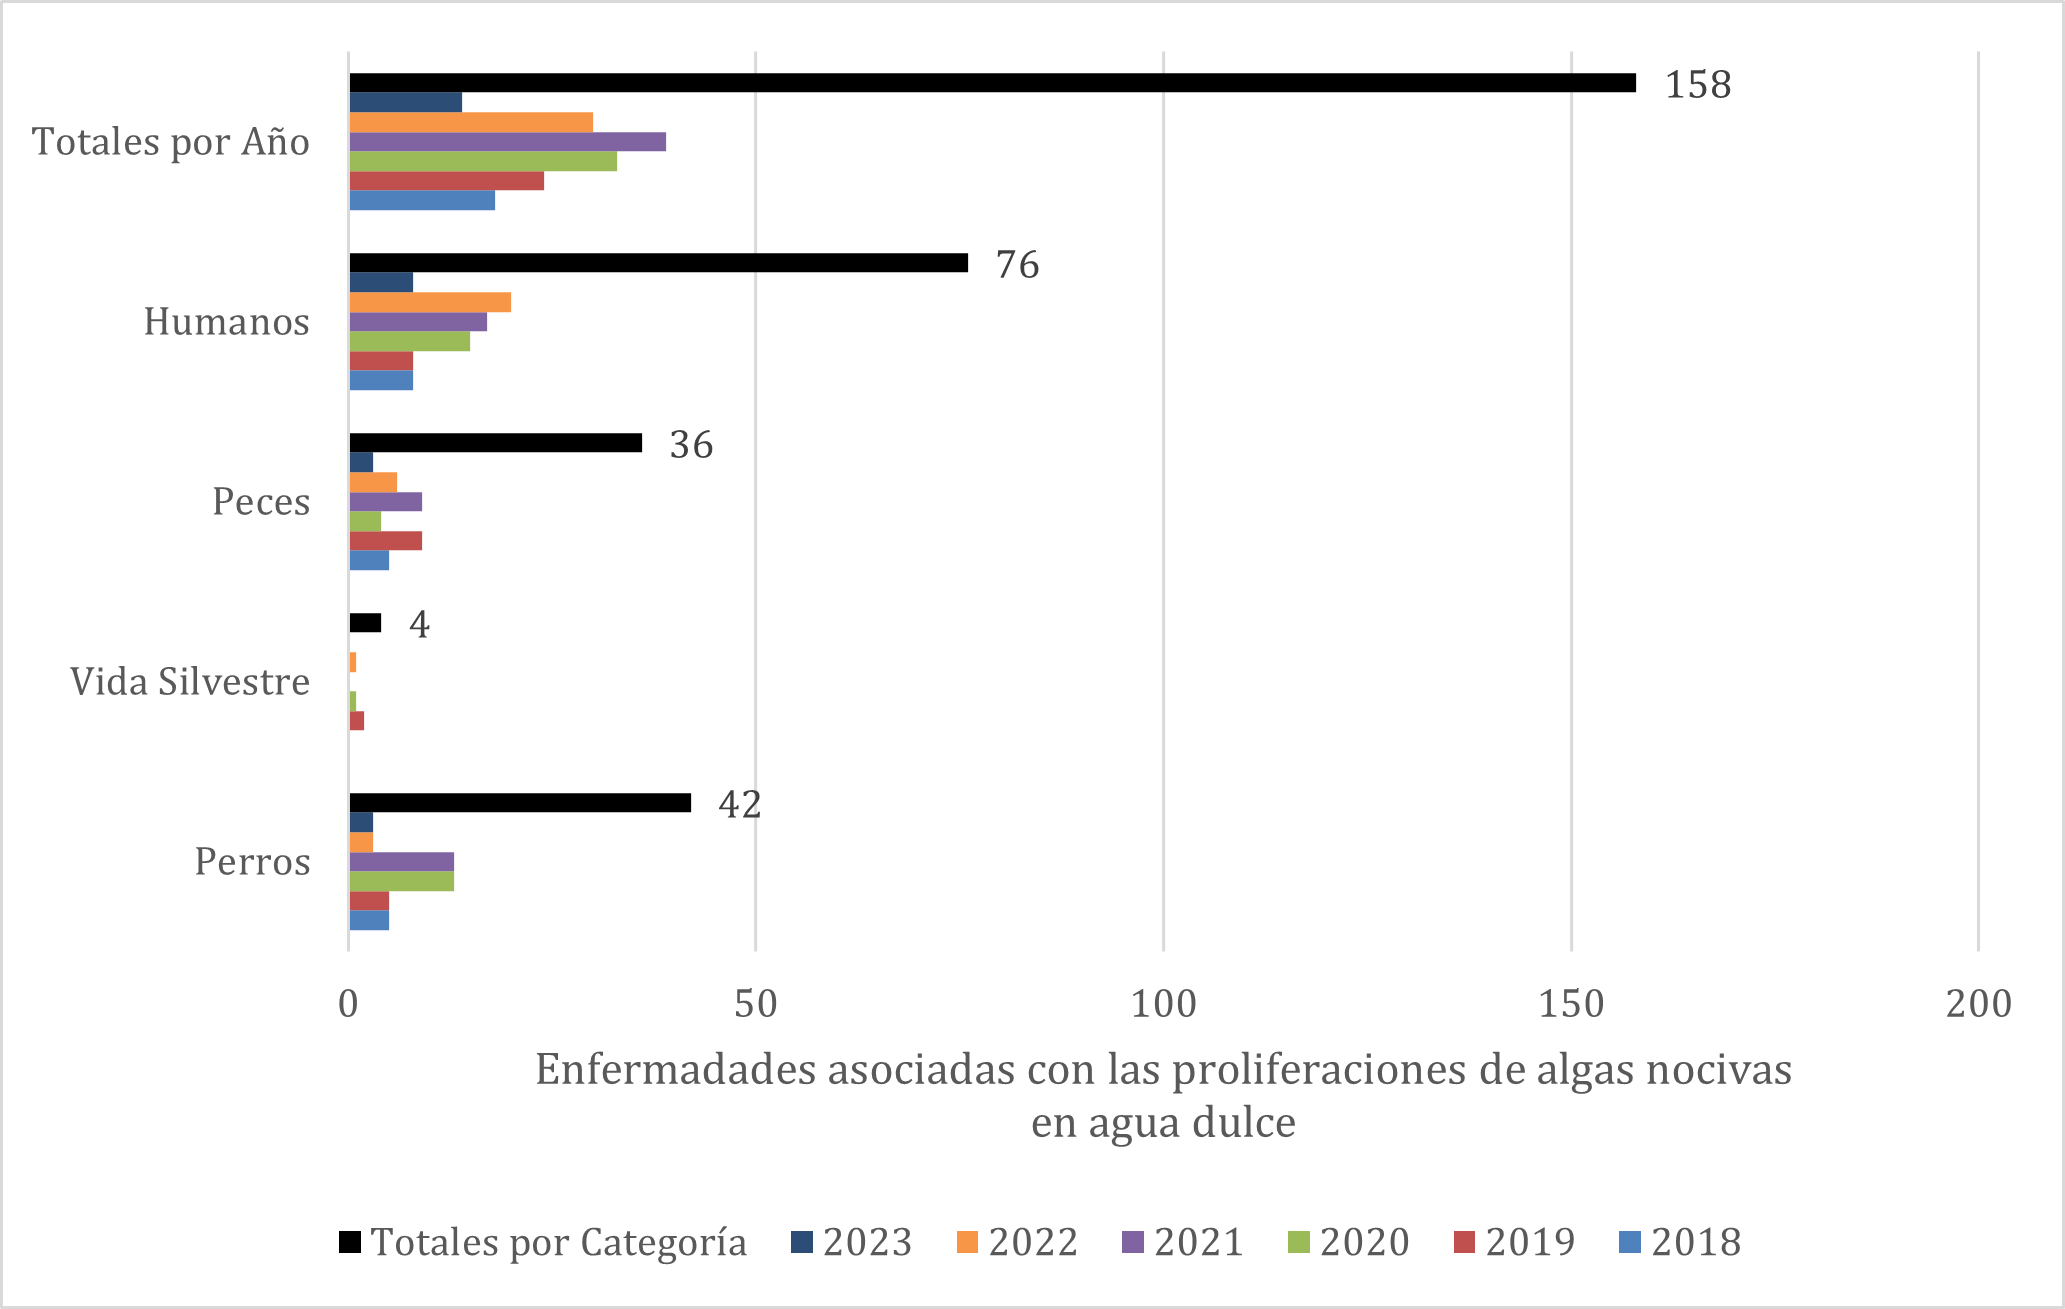 Enfermedades asociadas con proliferaciones de algas nocivas en agua dulce informadas a OHHABS de 2018 a 2023. El número representa individuos (excepto cuando se envían como grupo, como los peces).